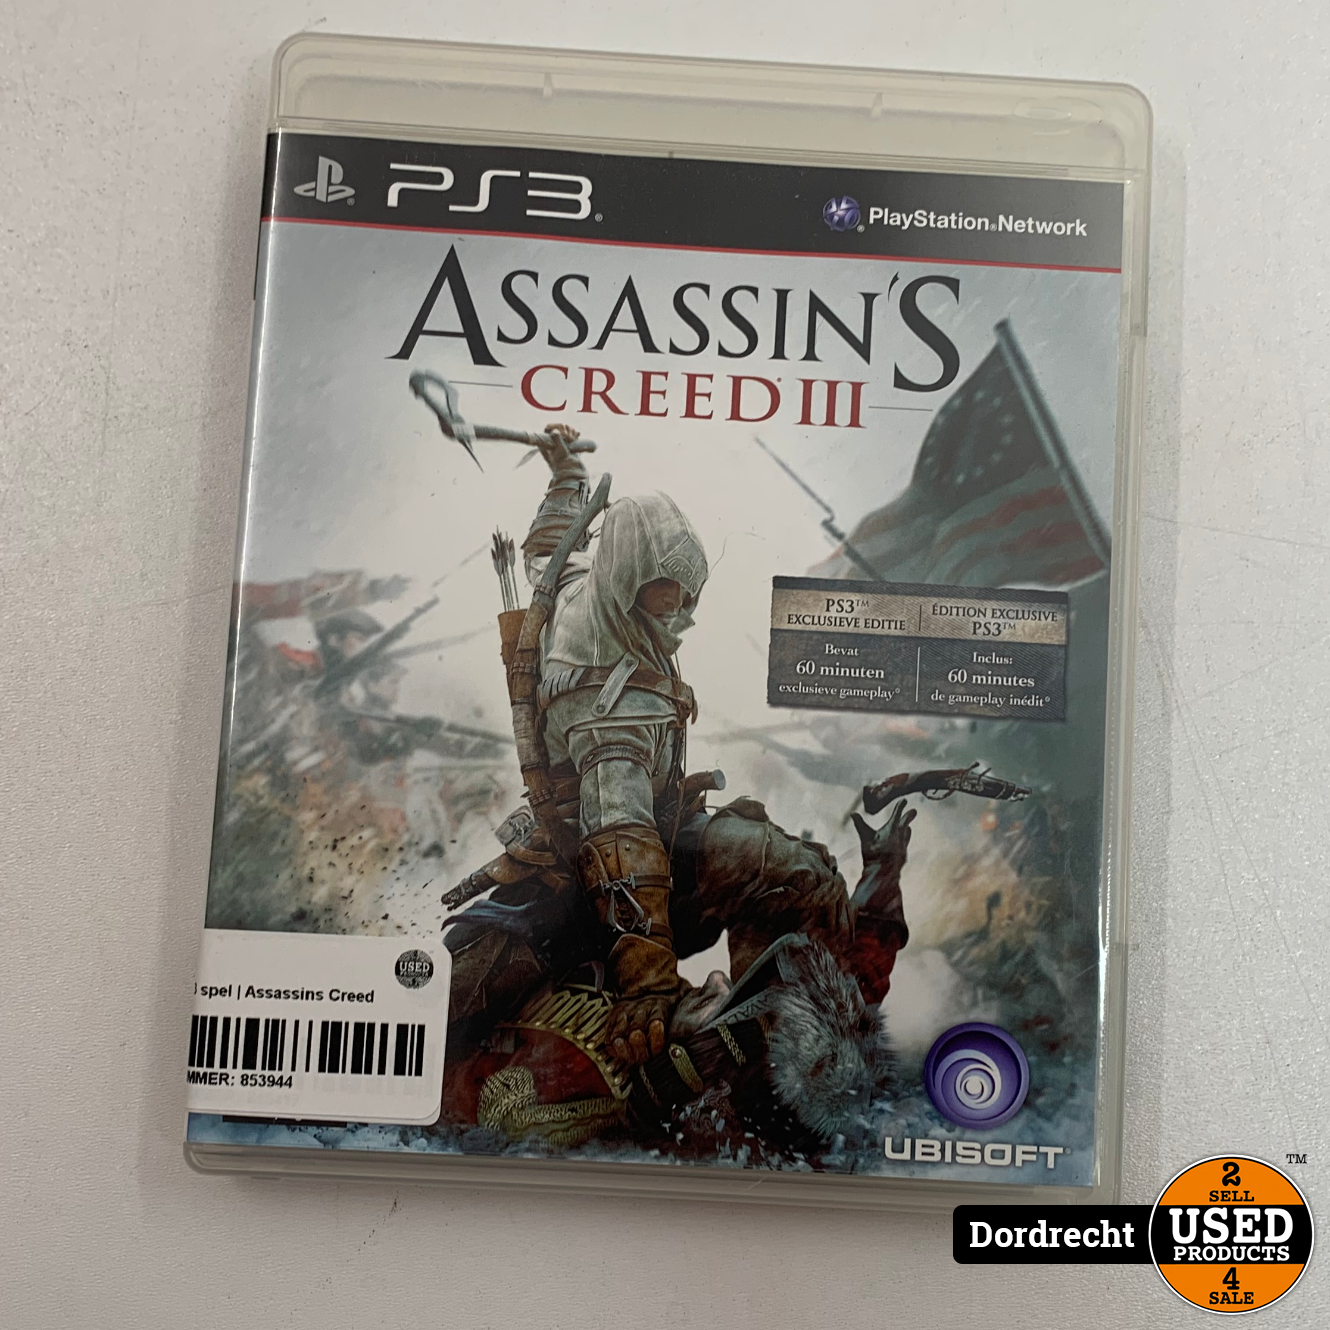 Playstation spel | Assassins Creed III - Dordrecht